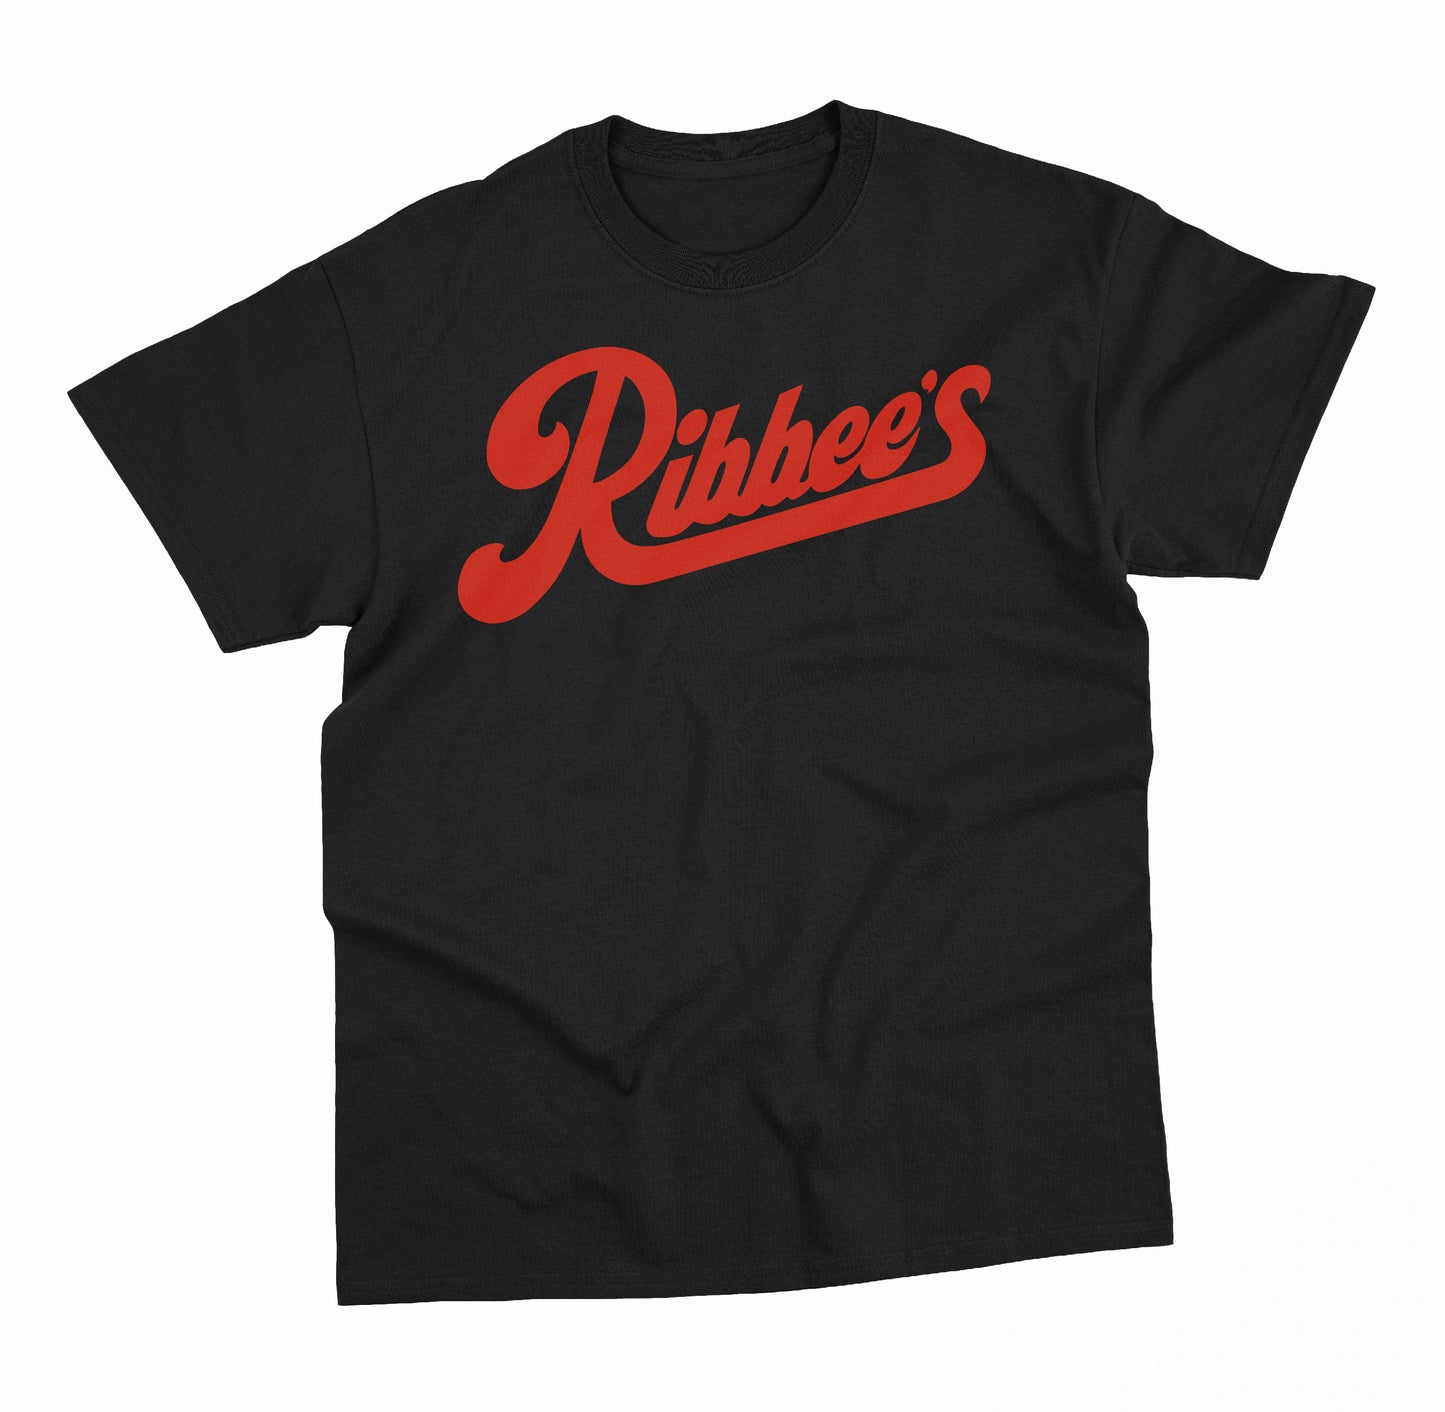 Ribbee’s T-Shirt